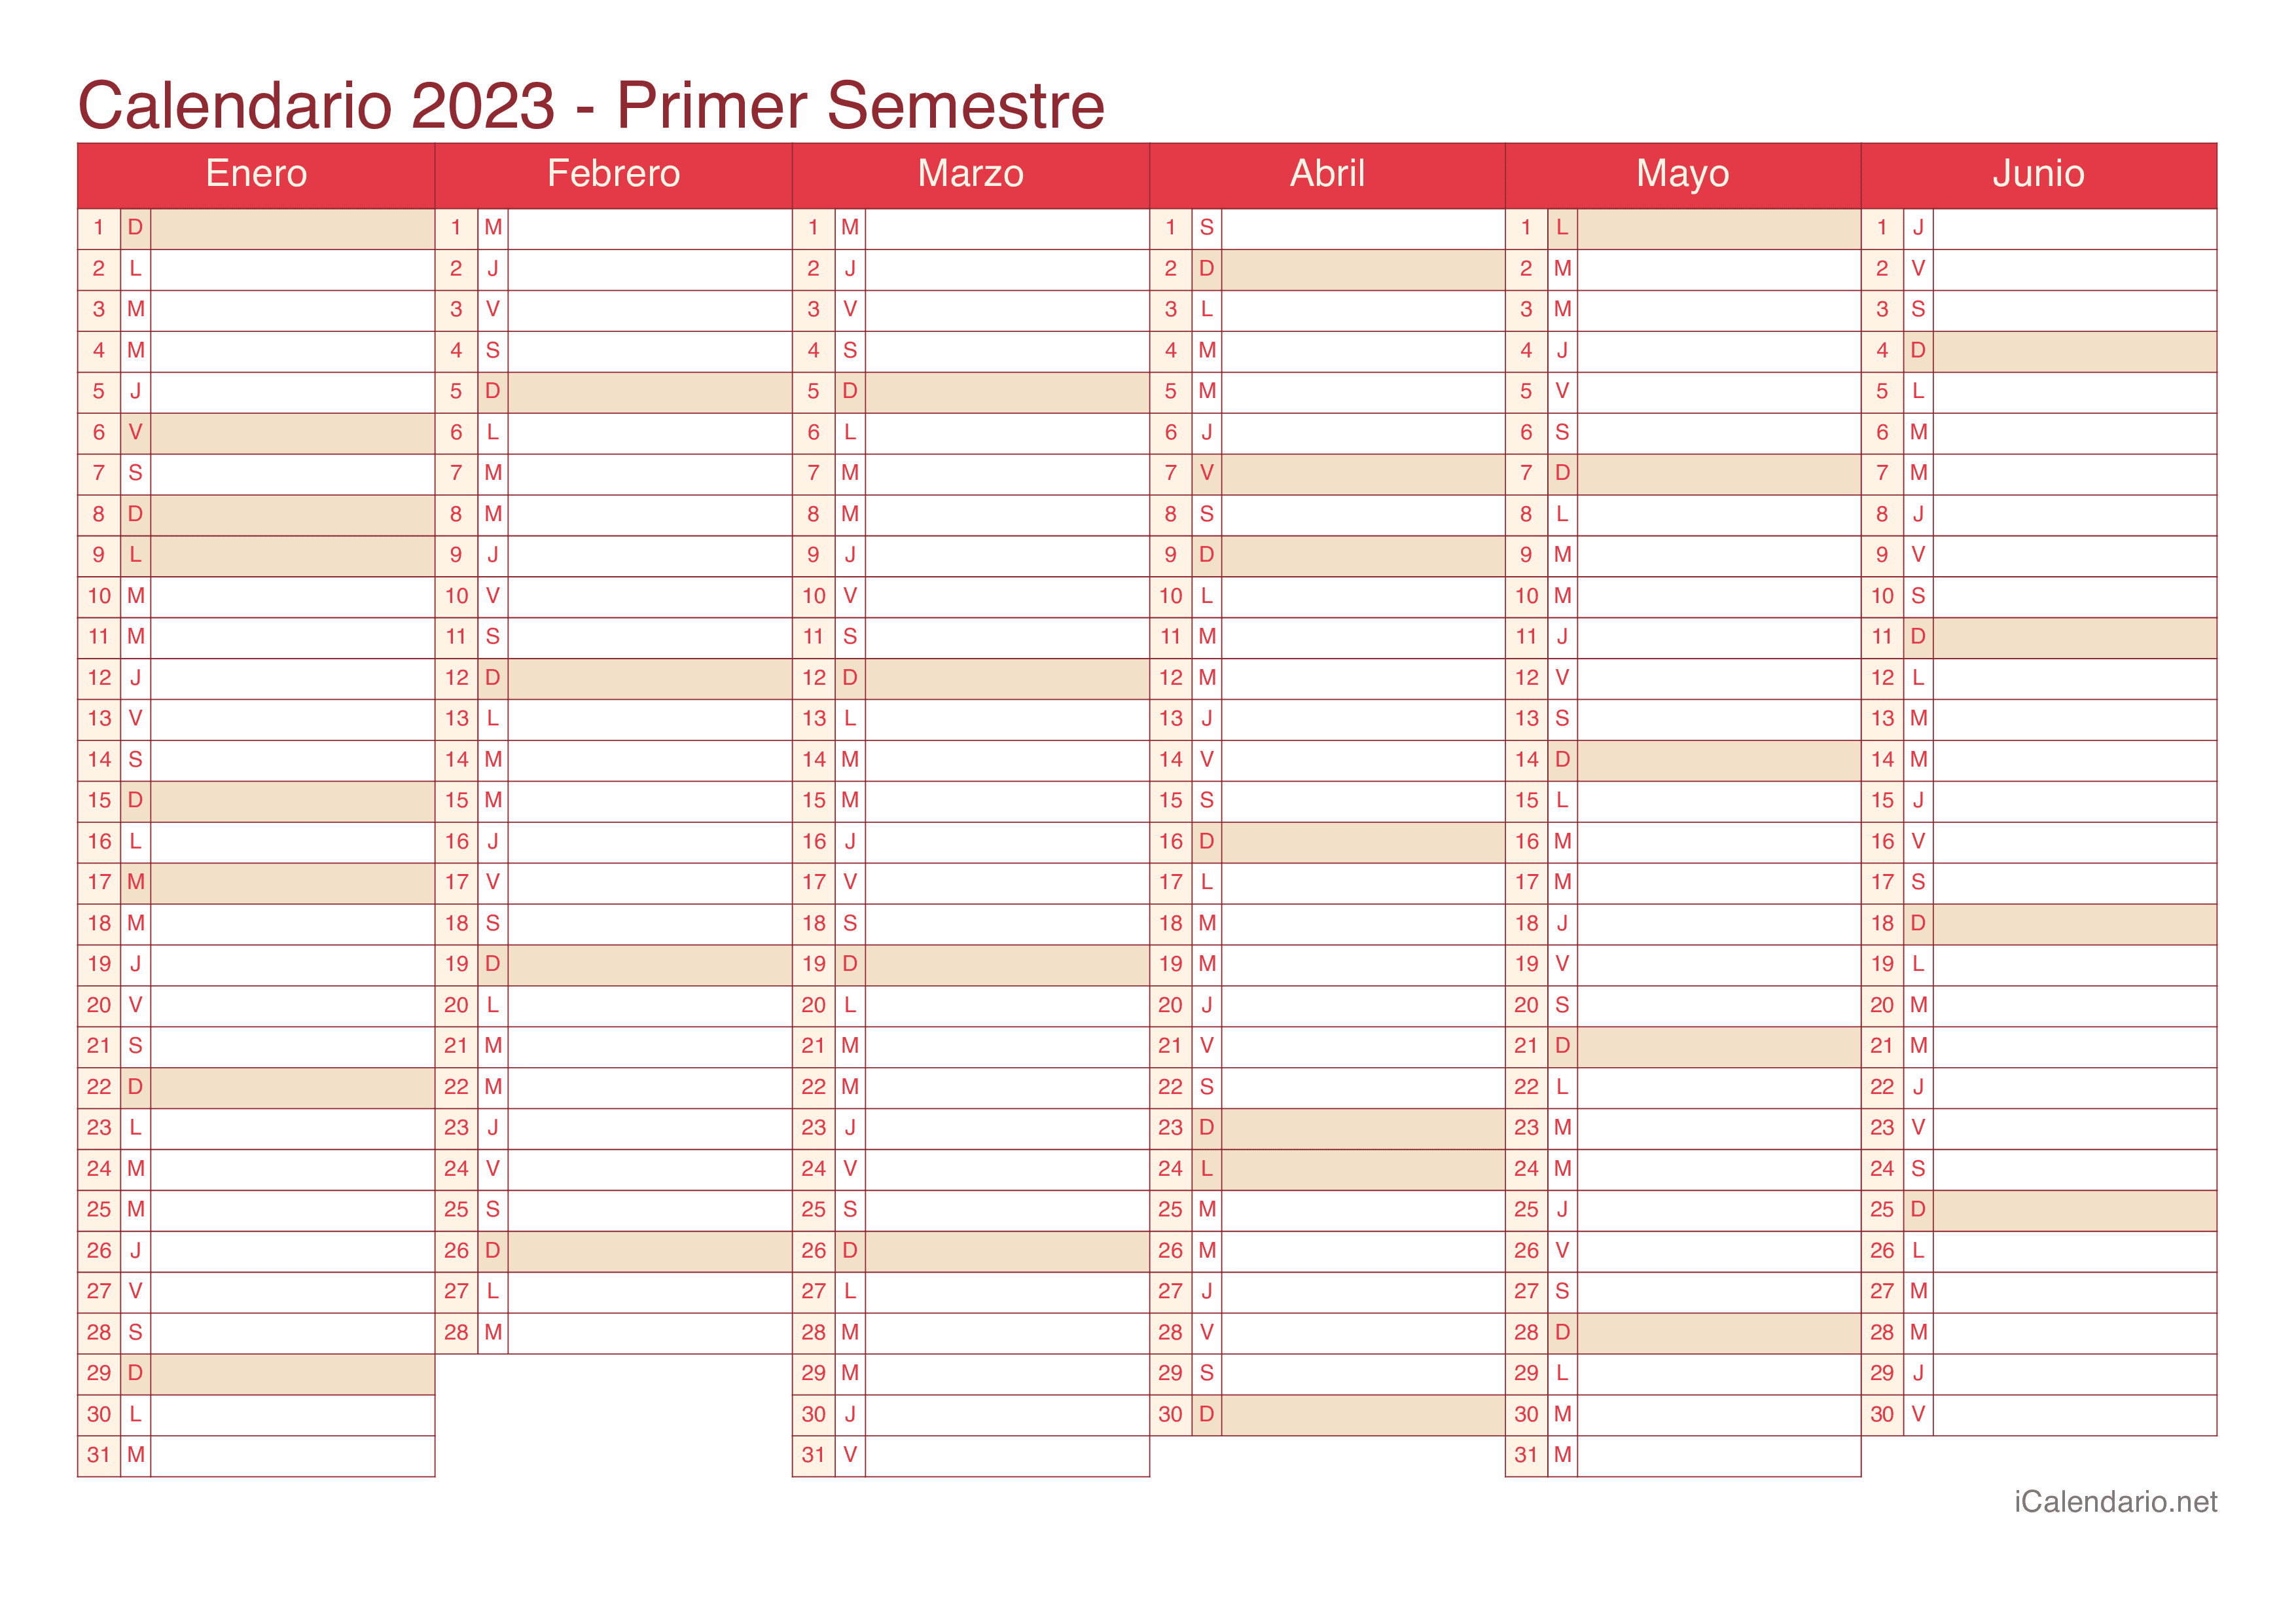 Calendario por semestre 2023 - Cherry